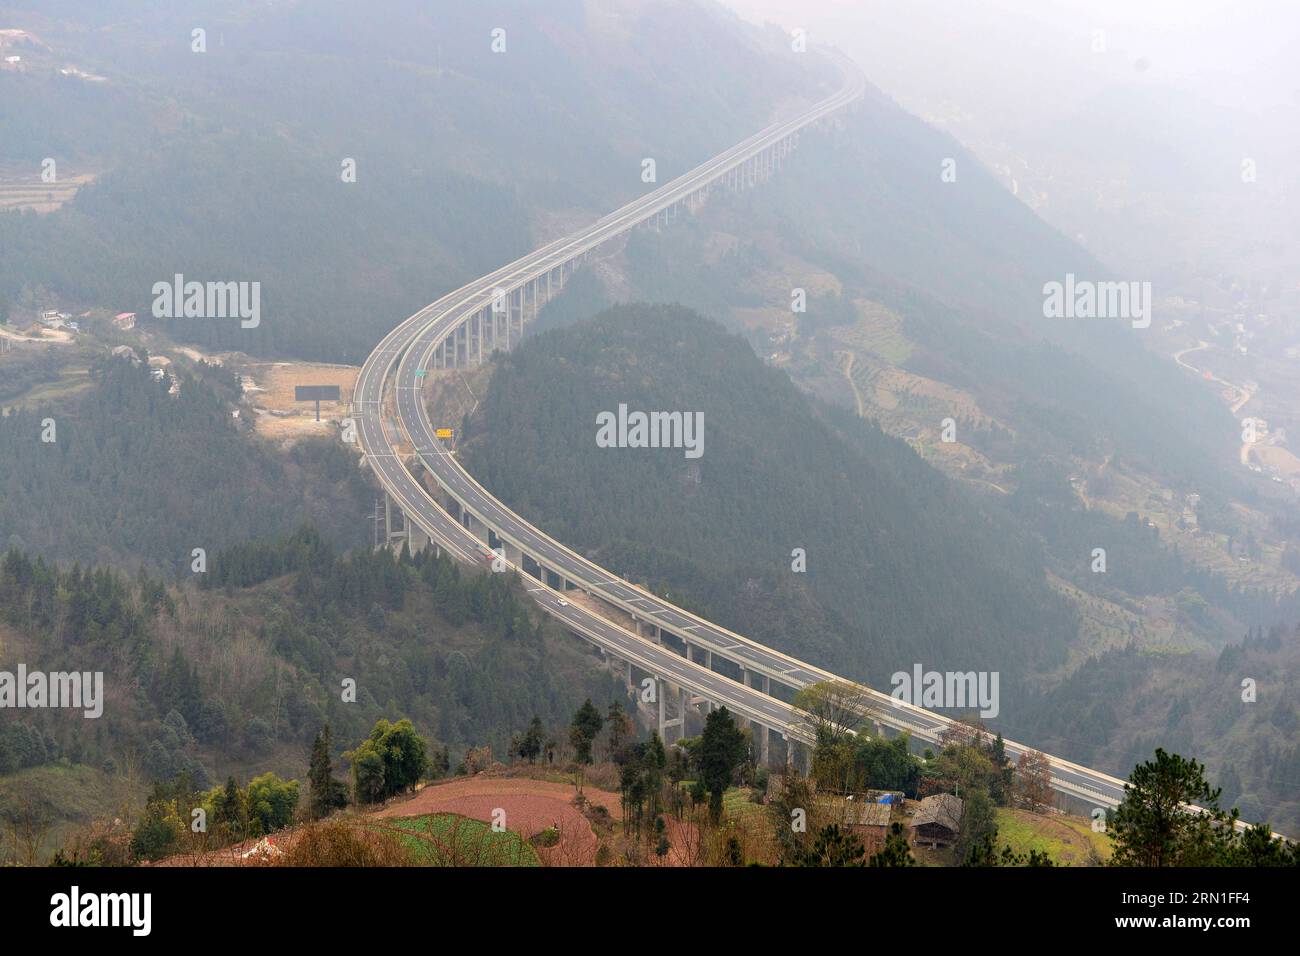 (141227) -- ENSHI, 27 dicembre 2014 -- foto scattata il 27 dicembre 2014 mostra un segmento della Shanghai-Chengdu Expressway nella contea di Badong di Enshi, nella provincia di Hubei della Cina centrale. L'autostrada di Shanghai-Chengdu, lunga 1.966 chilometri, è stata messa in funzione il 27 dicembre, collegando il comune di Shanghai, le province di Jiangsu e Anhui nella Cina orientale, la provincia di Hubei nella Cina centrale, il comune di Chongqing e la provincia di Sichuan nel sud-ovest della Cina. (Yxb) CHINA-SHANGHAI-CHENGDU-EXPRESSWAY (CN) YangxShunpei PUBLICATIONxNOTxINxCHN Enshi DEC 27 2014 la foto scattata IL DEC 27 2014 mostra un segmento dello Shanghai Chen Foto Stock